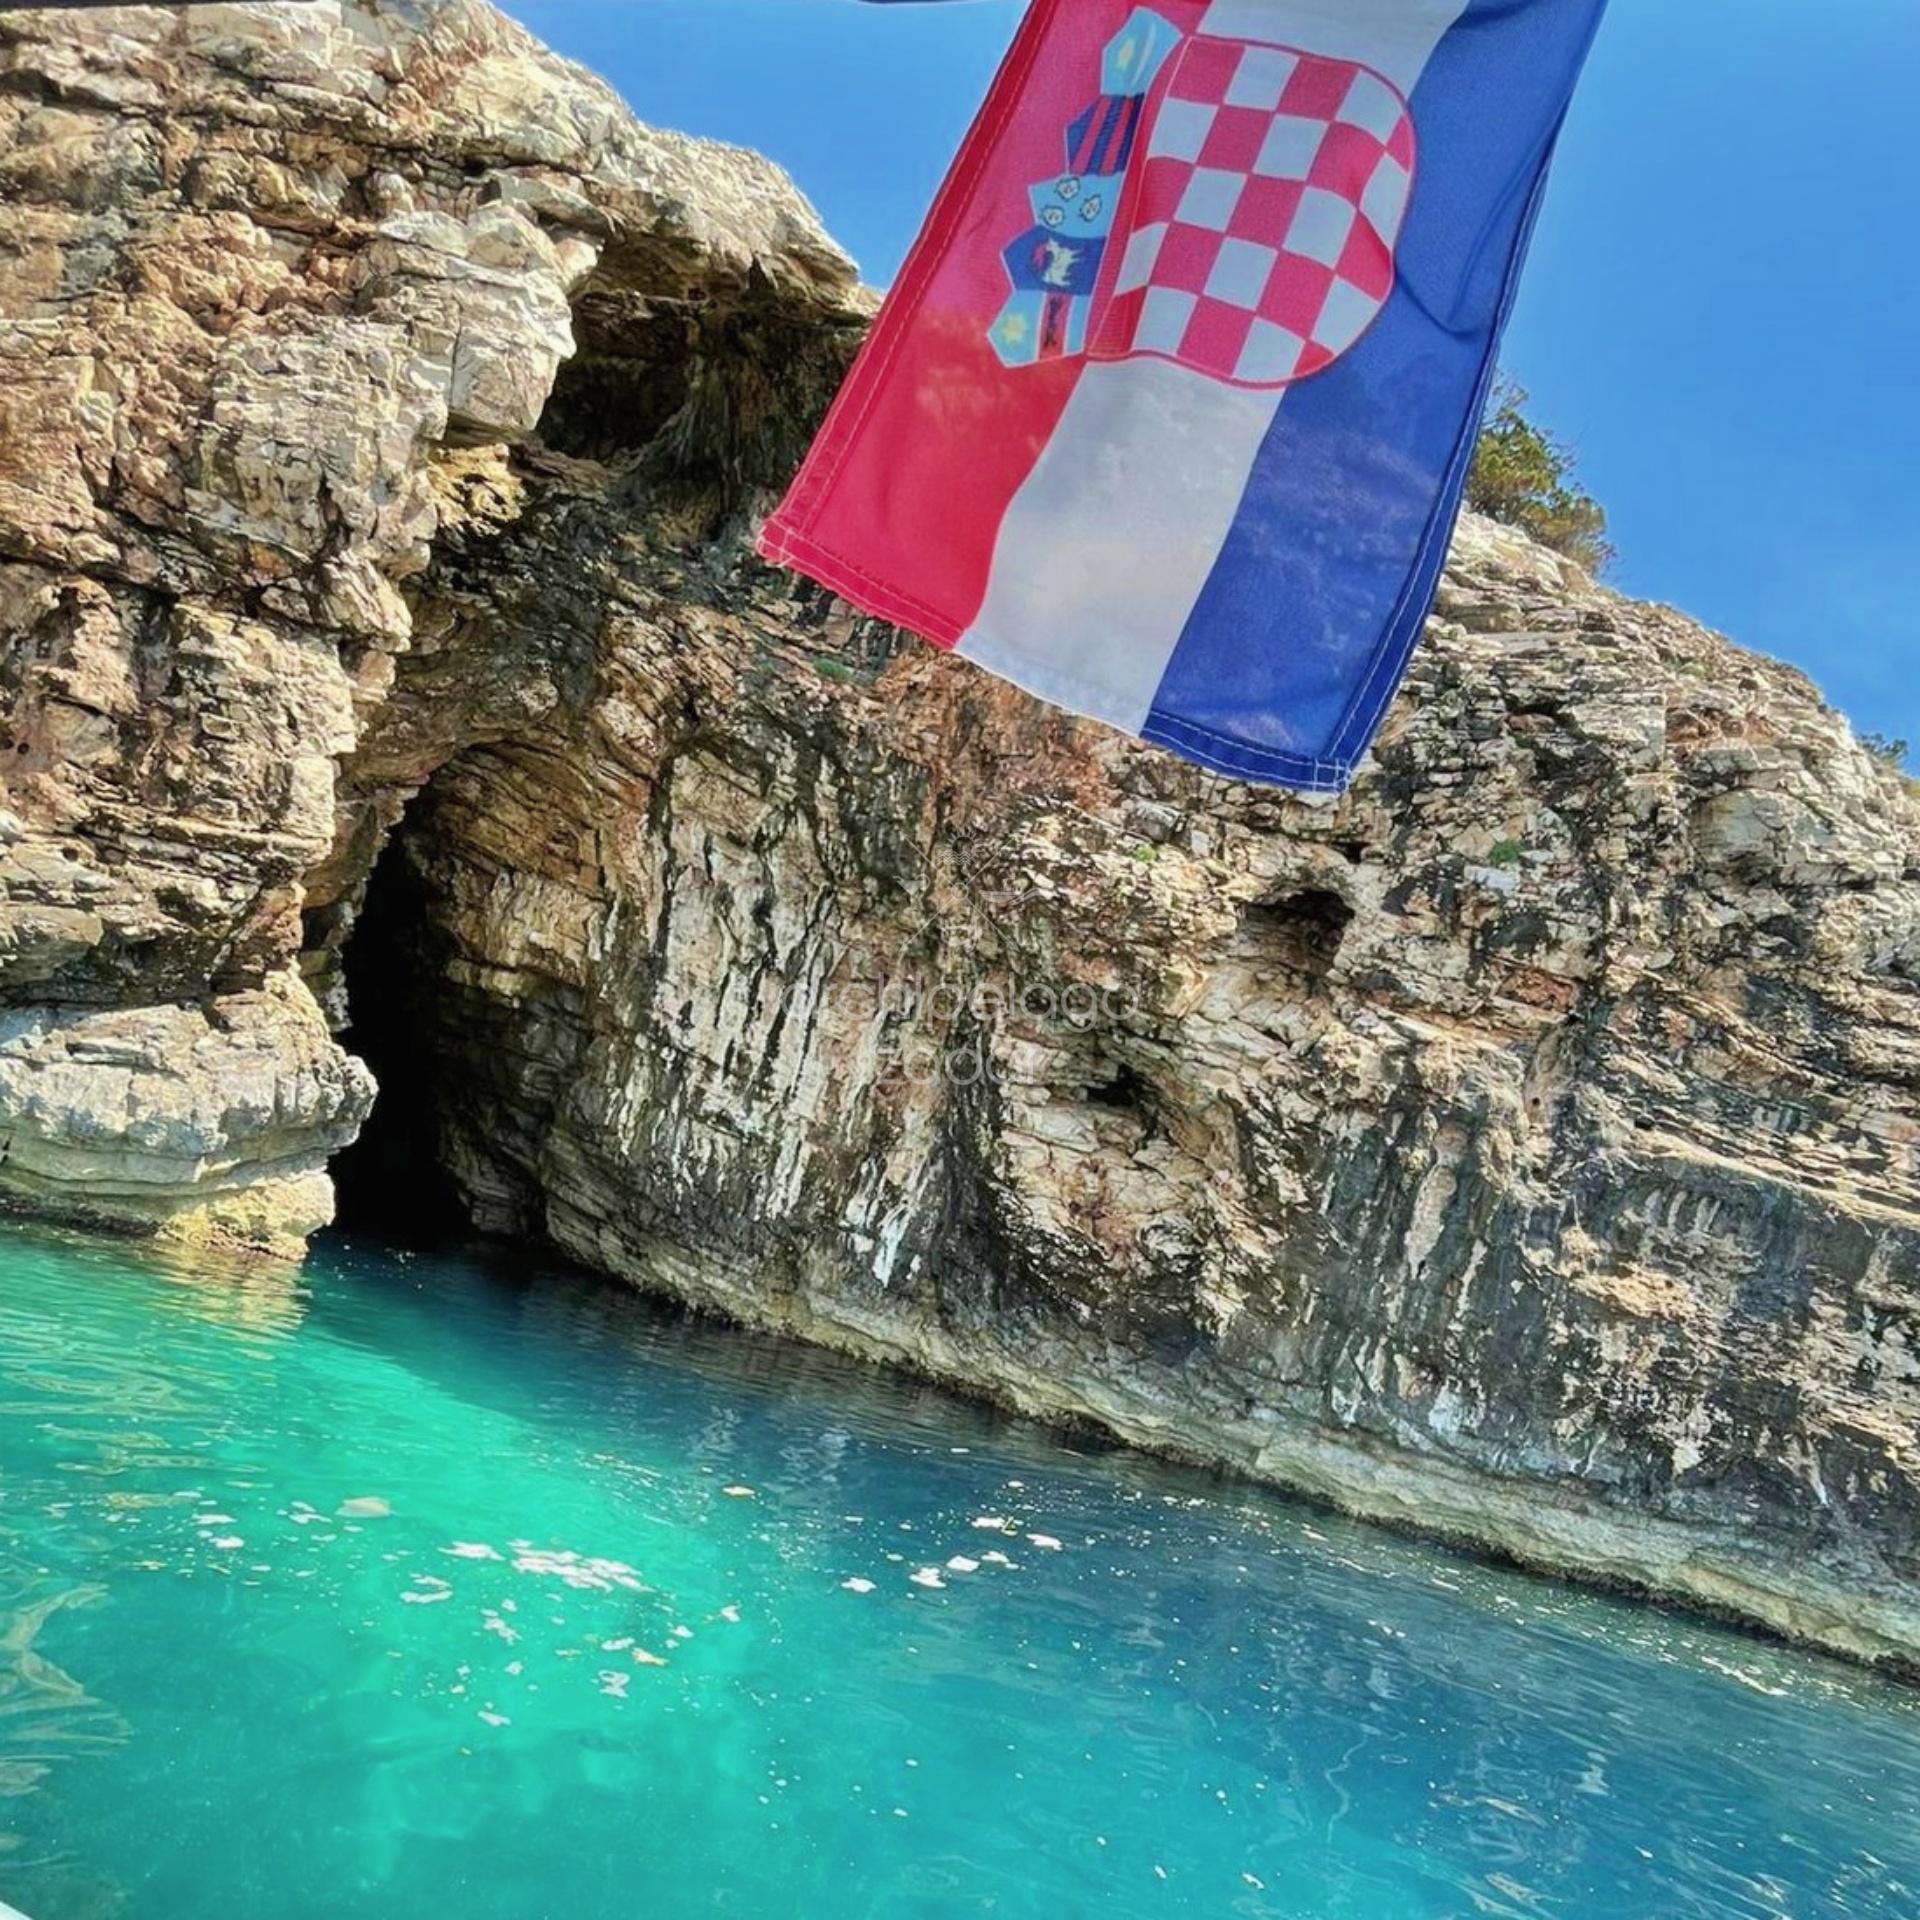 boat tour to golubinka sea cave entrance and croatian flag